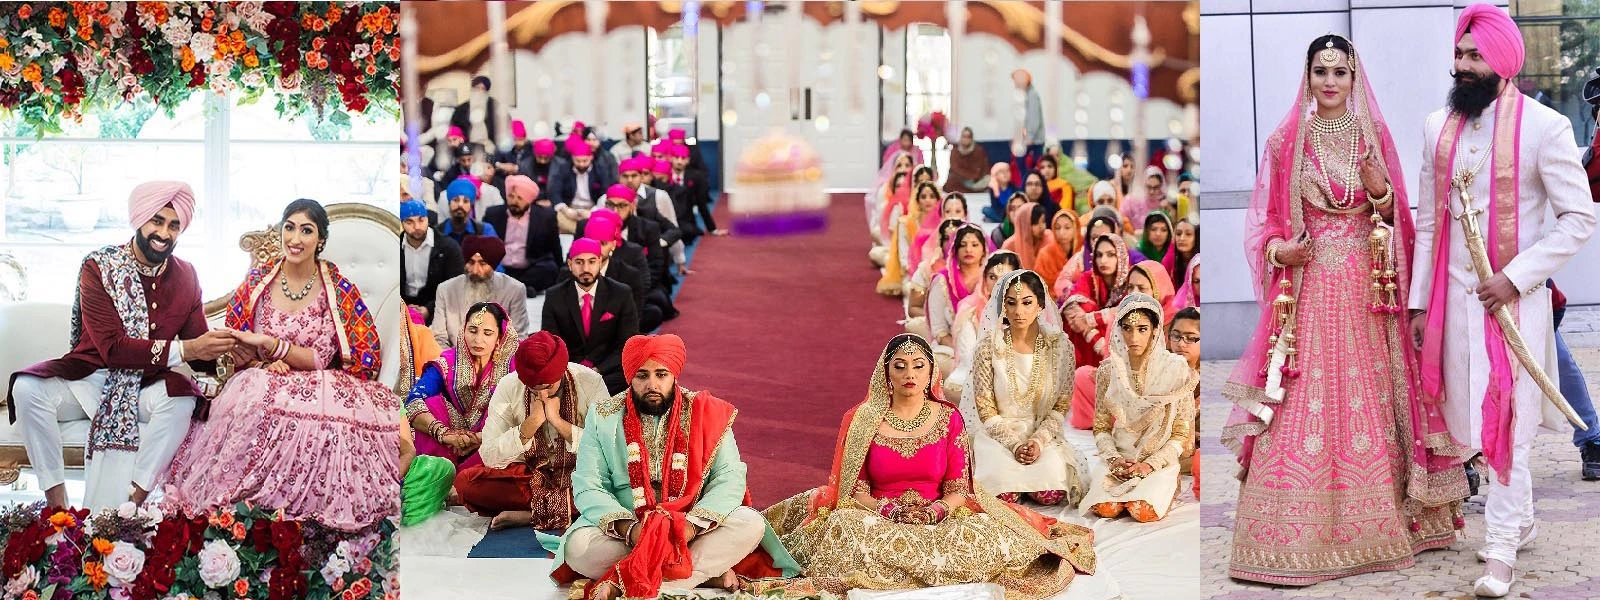 Sikh wedding images